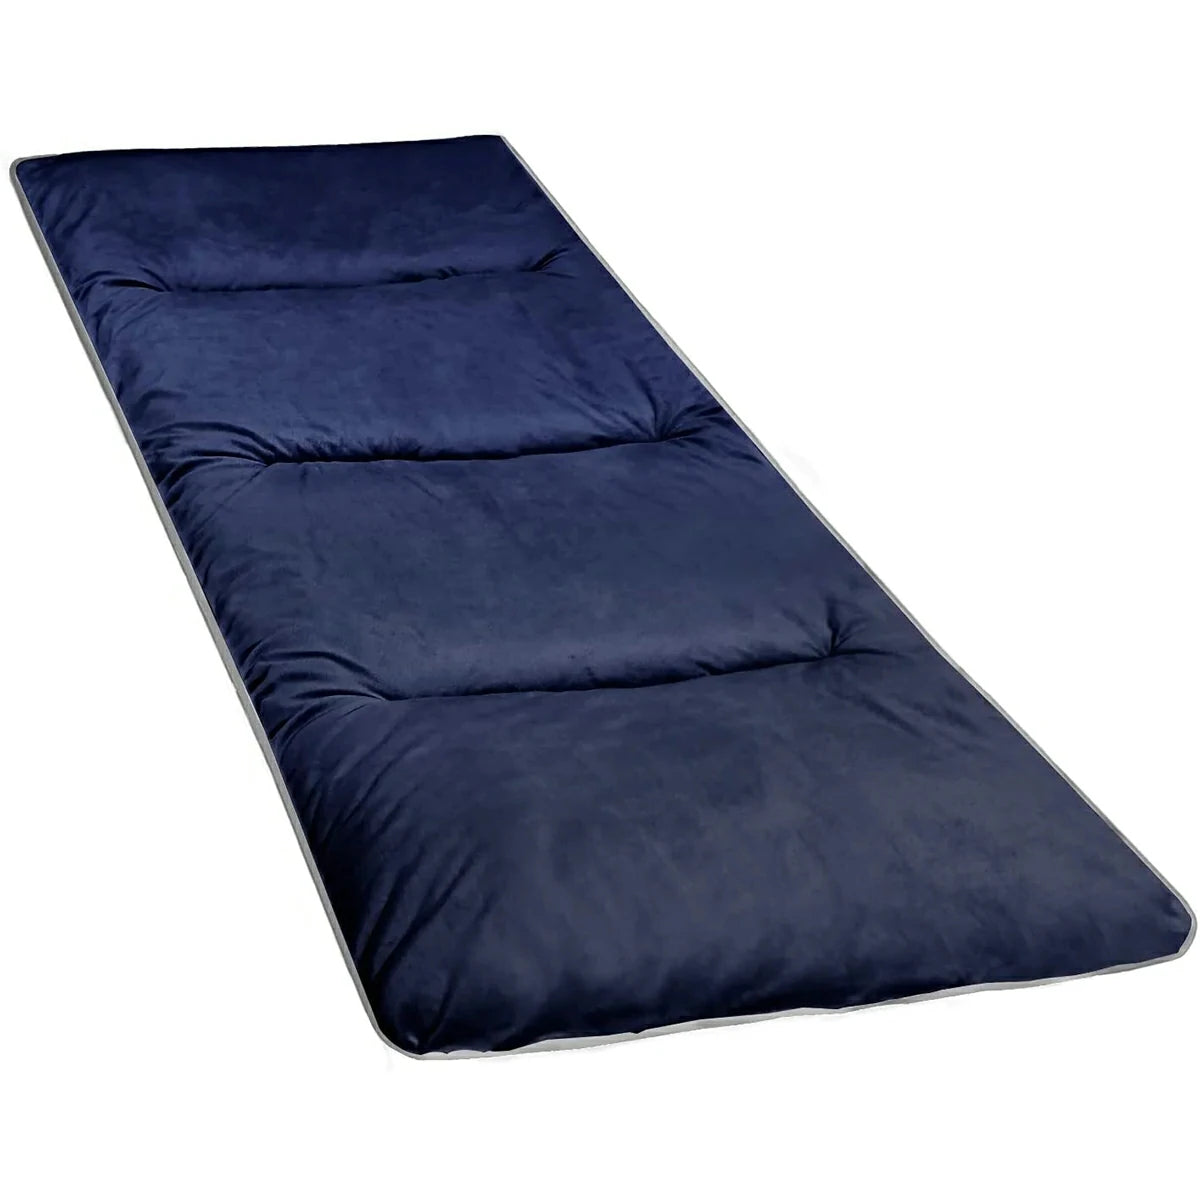 Sleeping Cot Pads Comfortable Portable Folding Camping Cot Mattress Pad